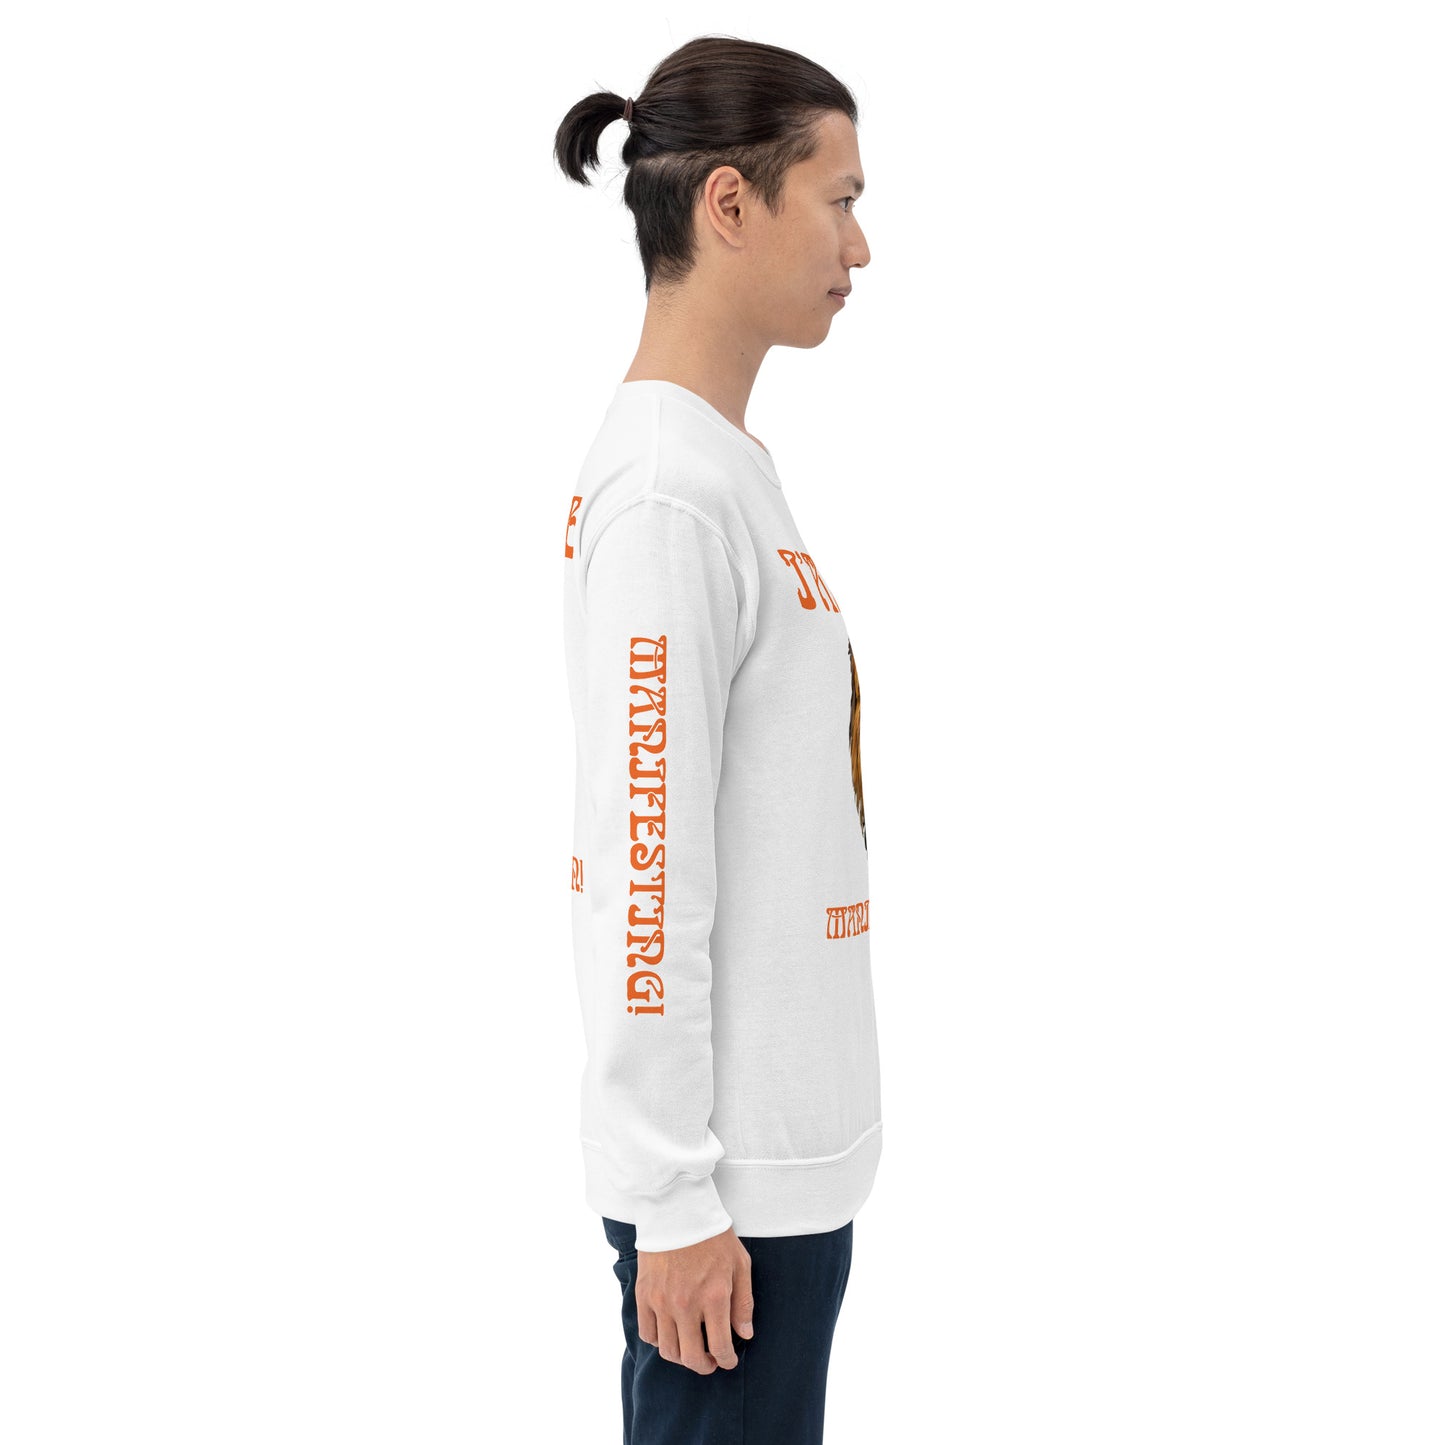 “I’AM THE MANIFESTATION!”White Unisex Sweatshirt W/Orange Font